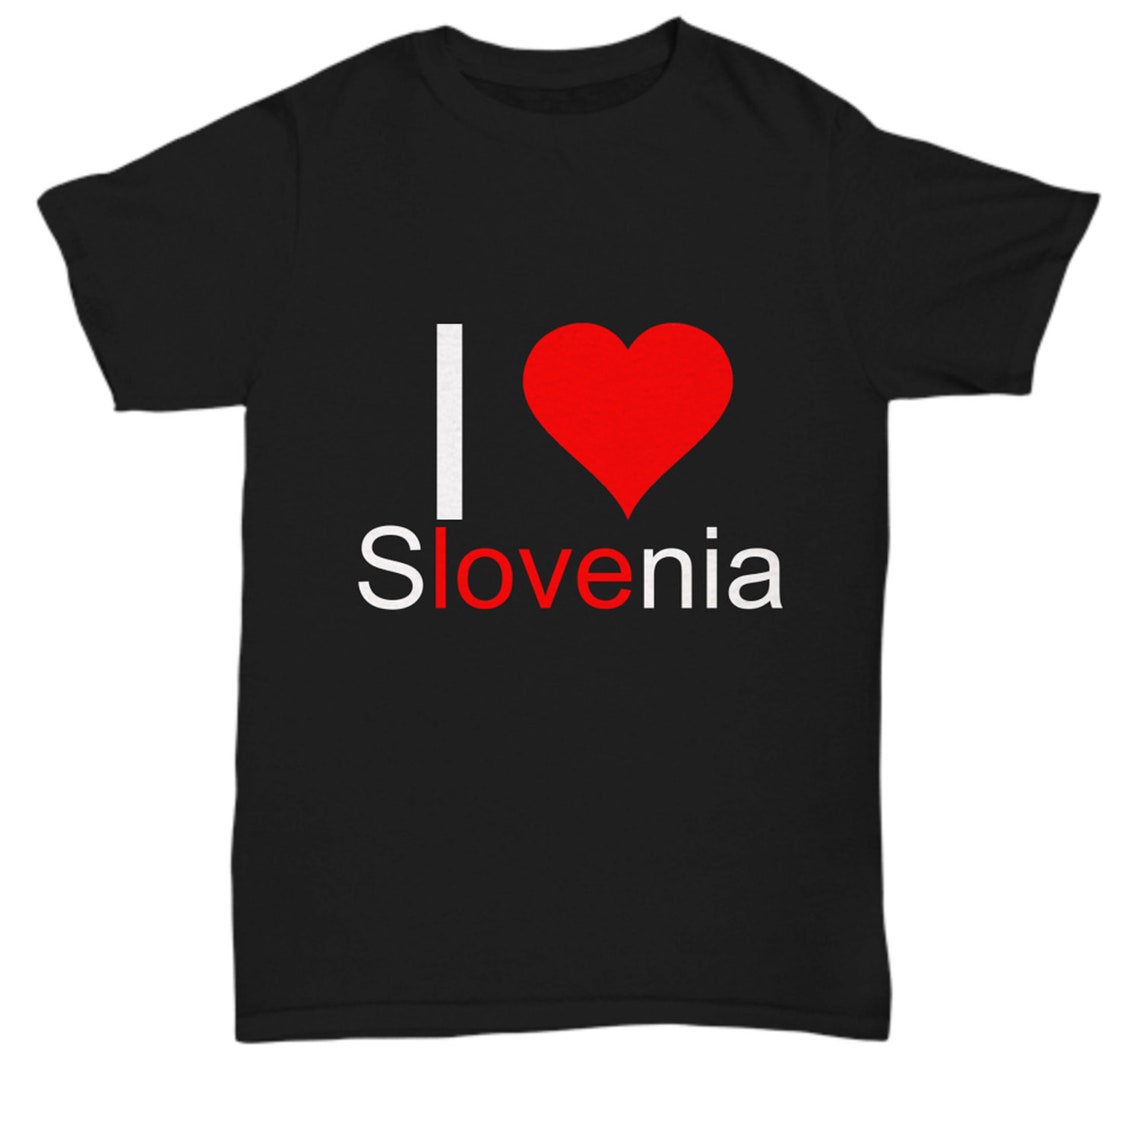 Slovenia Gifts Slovenia Shirt Slovenia tshirt | Etsy